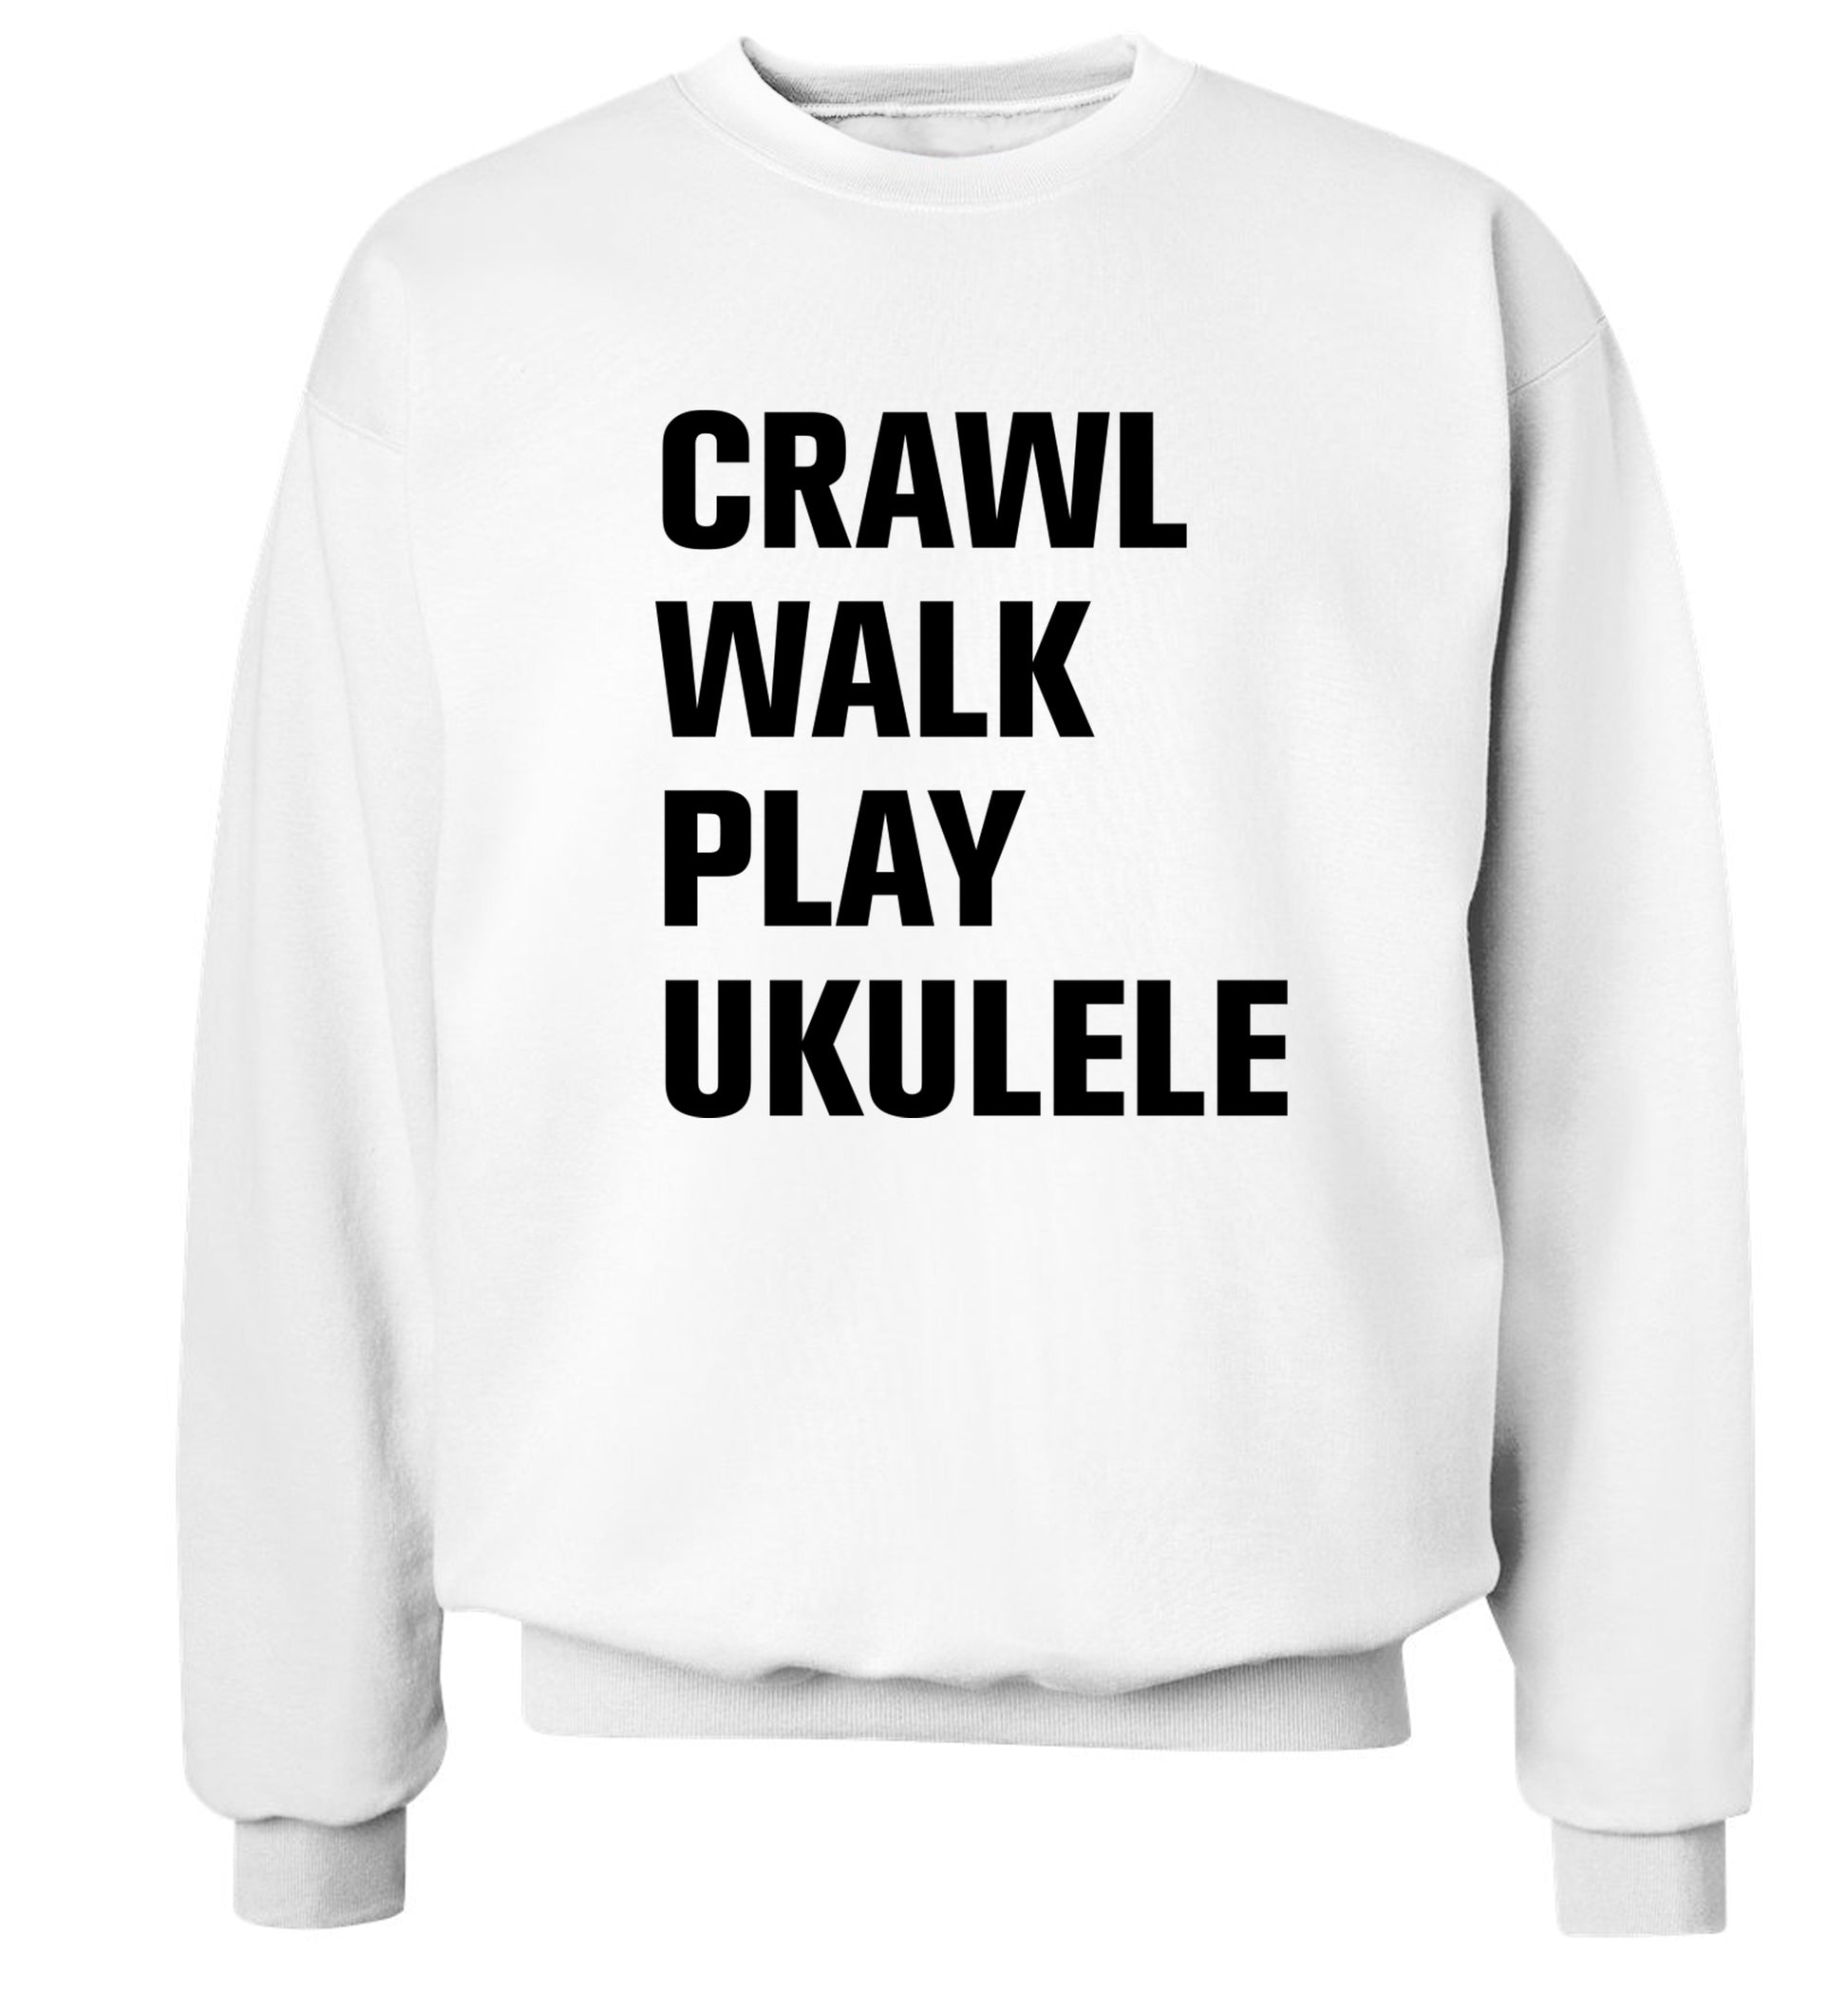 Crawl walk play ukulele Adult's unisex white Sweater 2XL